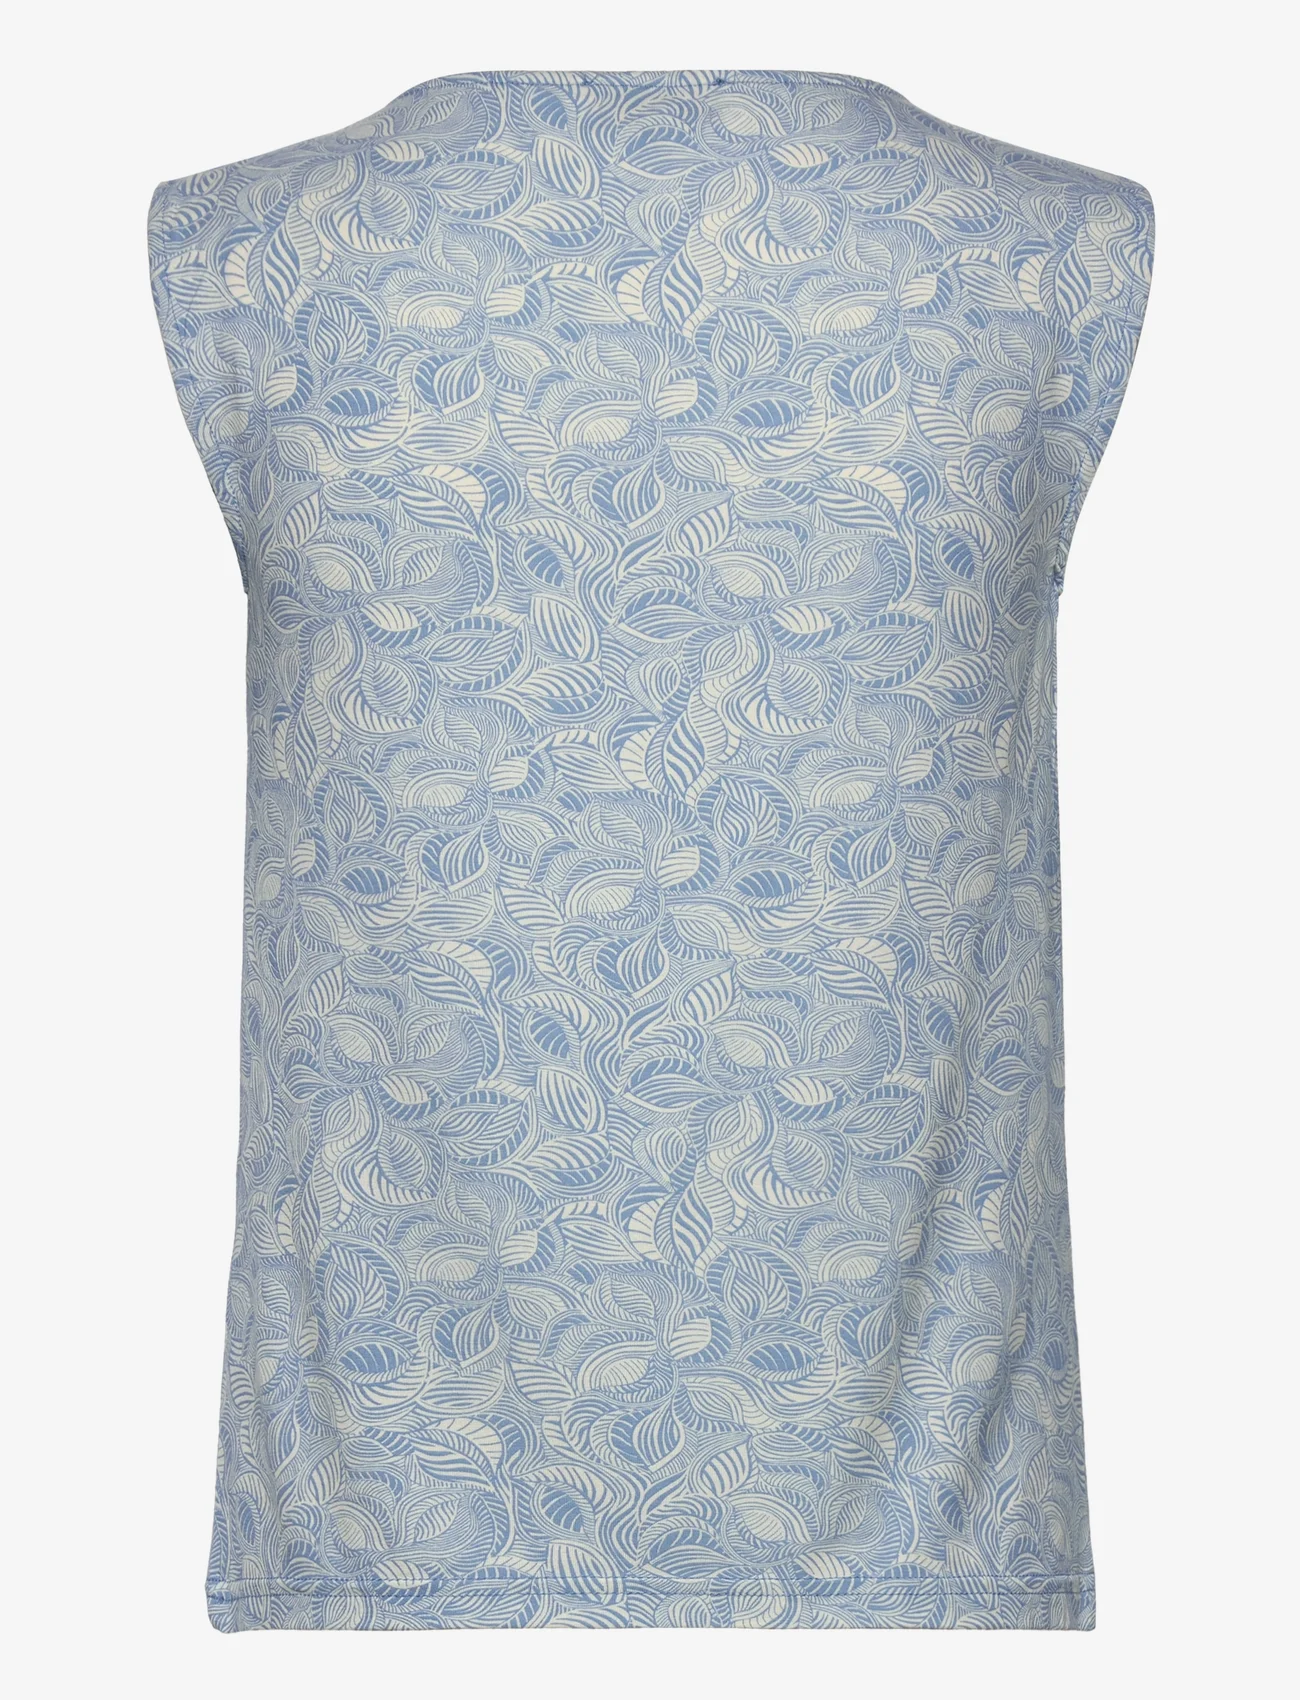 Rosemunde - Viscose t-shirt - laveste priser - blue leaf print - 1